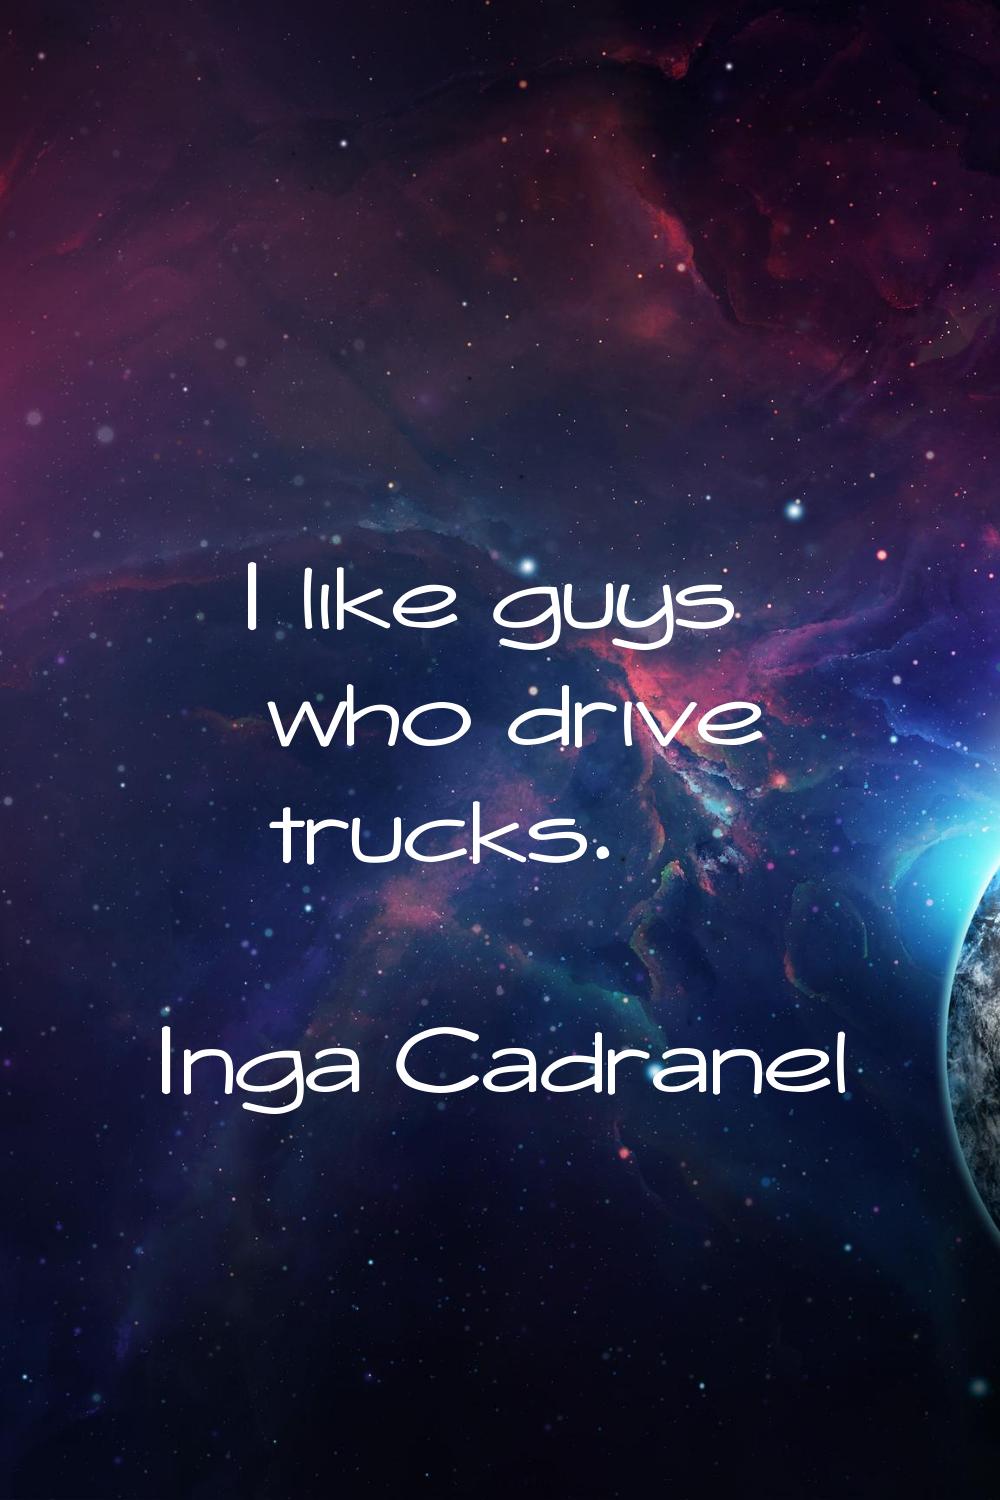 I like guys who drive trucks.